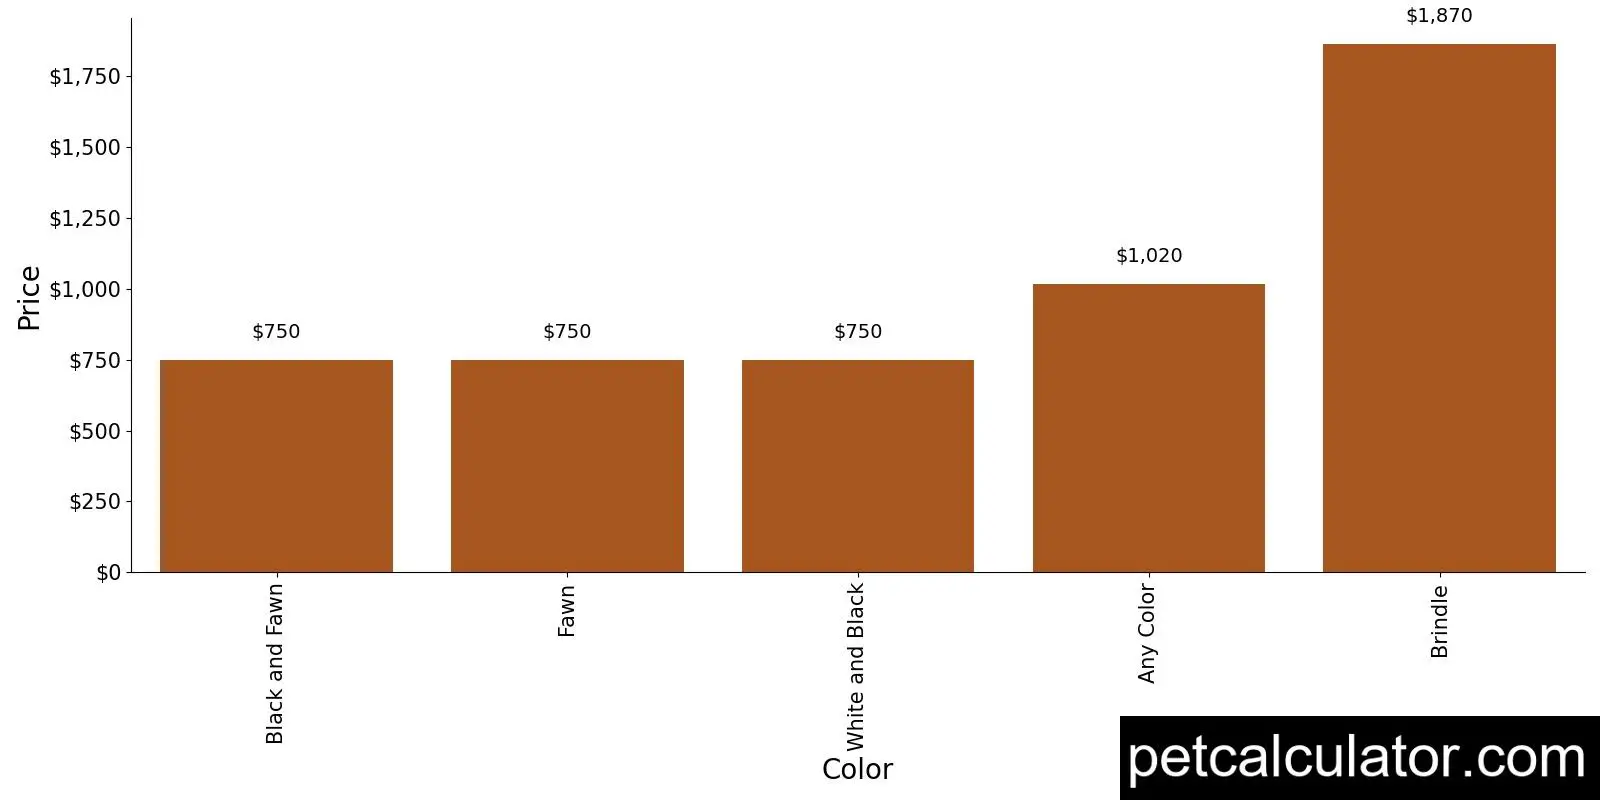 Price of Presa Canario by Color 